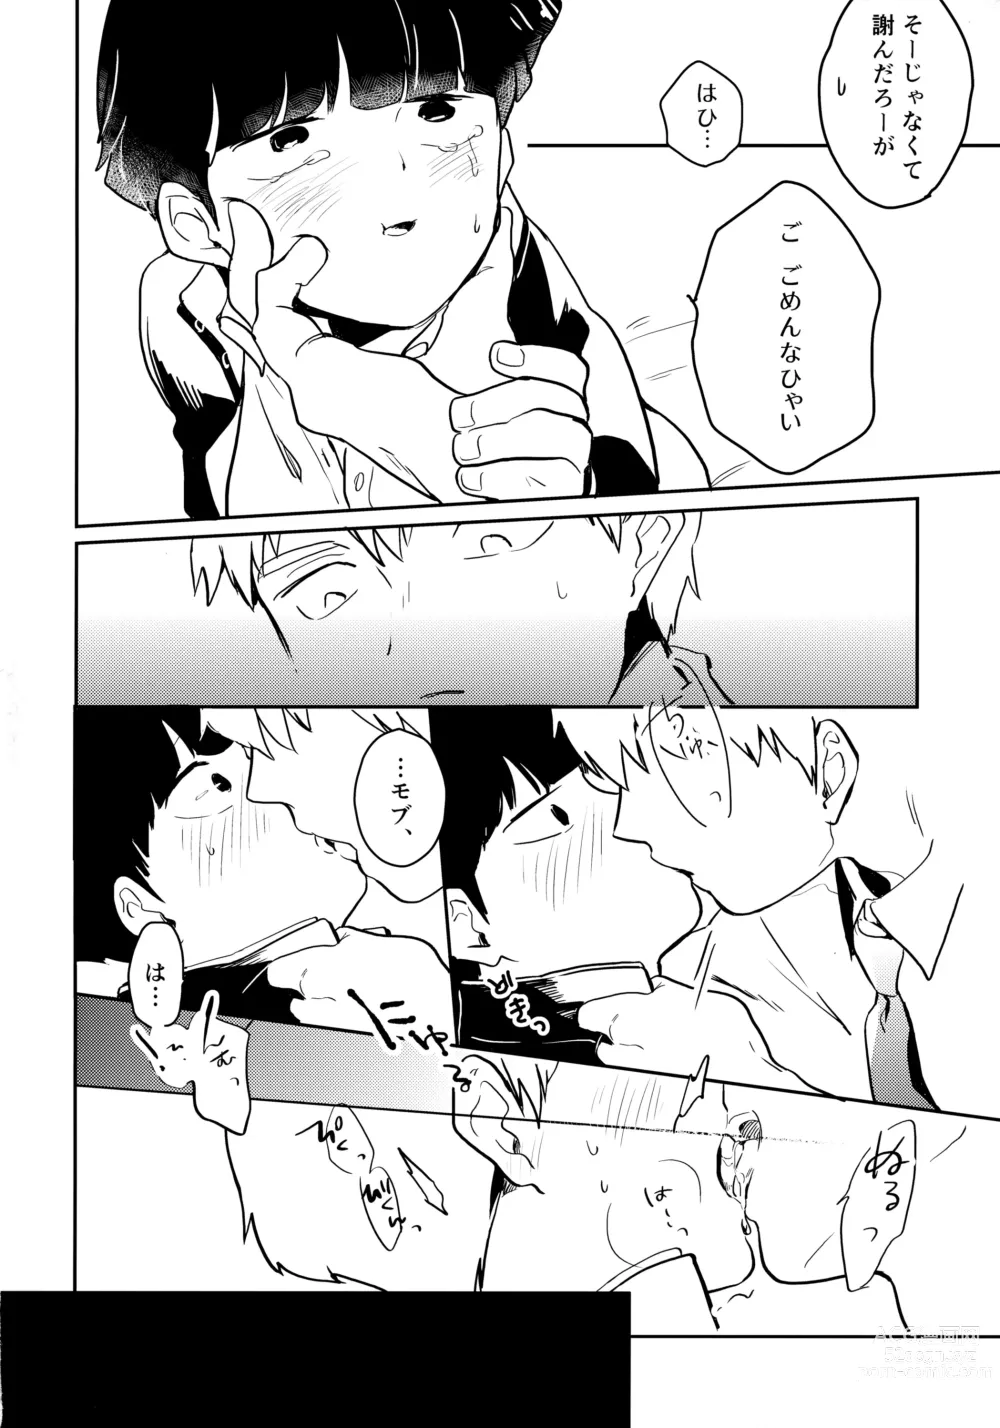 Page 13 of doujinshi Shitei Crash